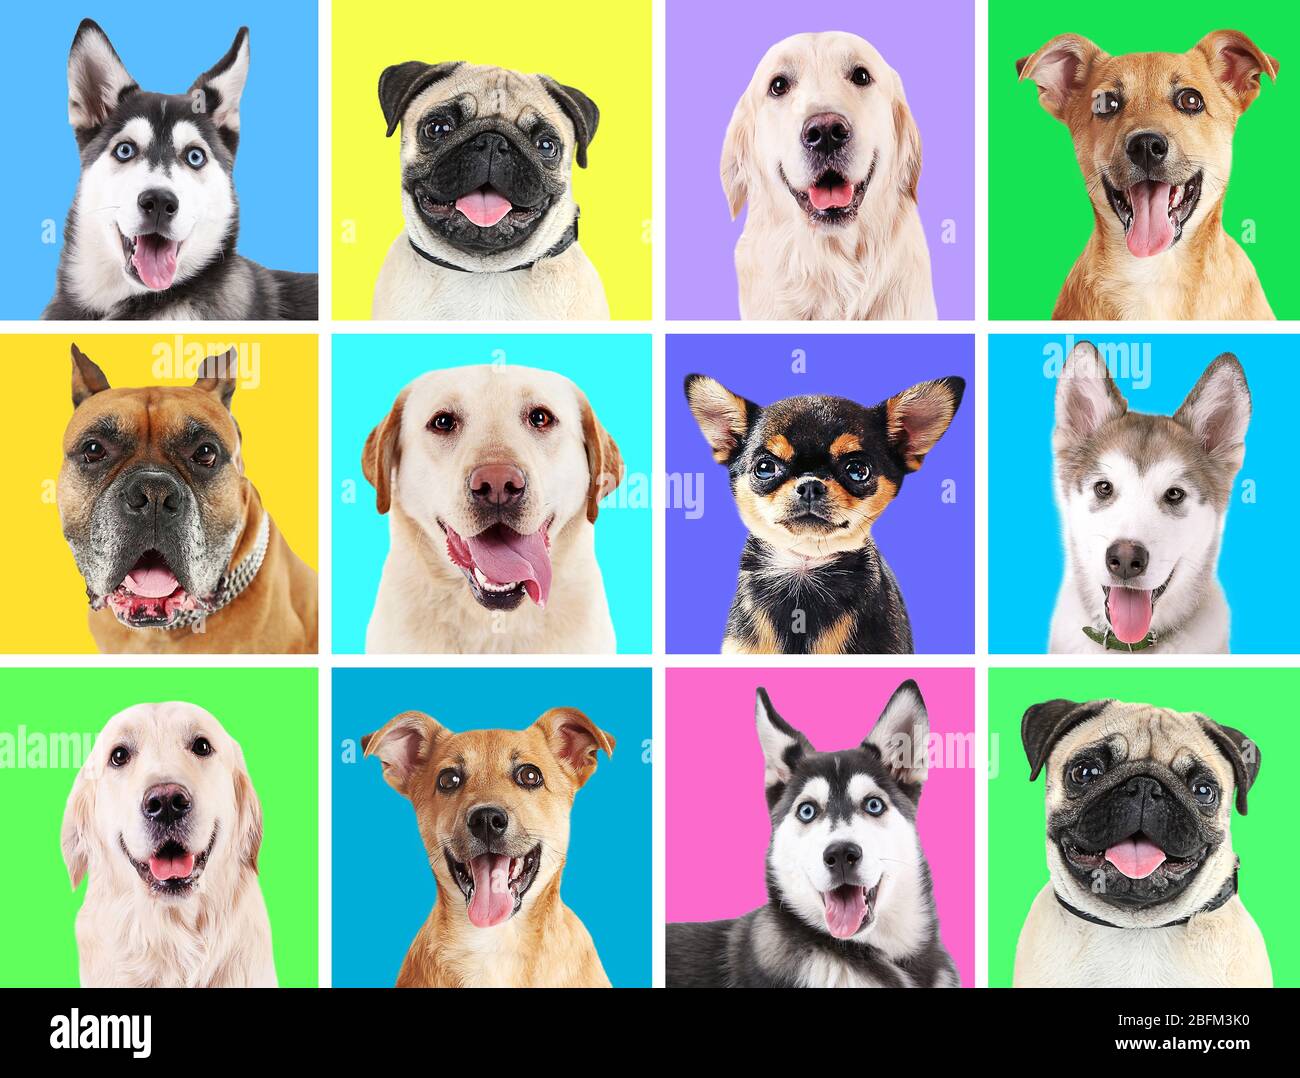 Những chú chó cưng đáng yêu thật dễ thương khi được đưa lên nền tảng màu sắc tươi vui. Hãy thưởng thức những hình ảnh đầy màu sắc này để đem lại niềm vui và tình yêu cho ngày mới của bạn.